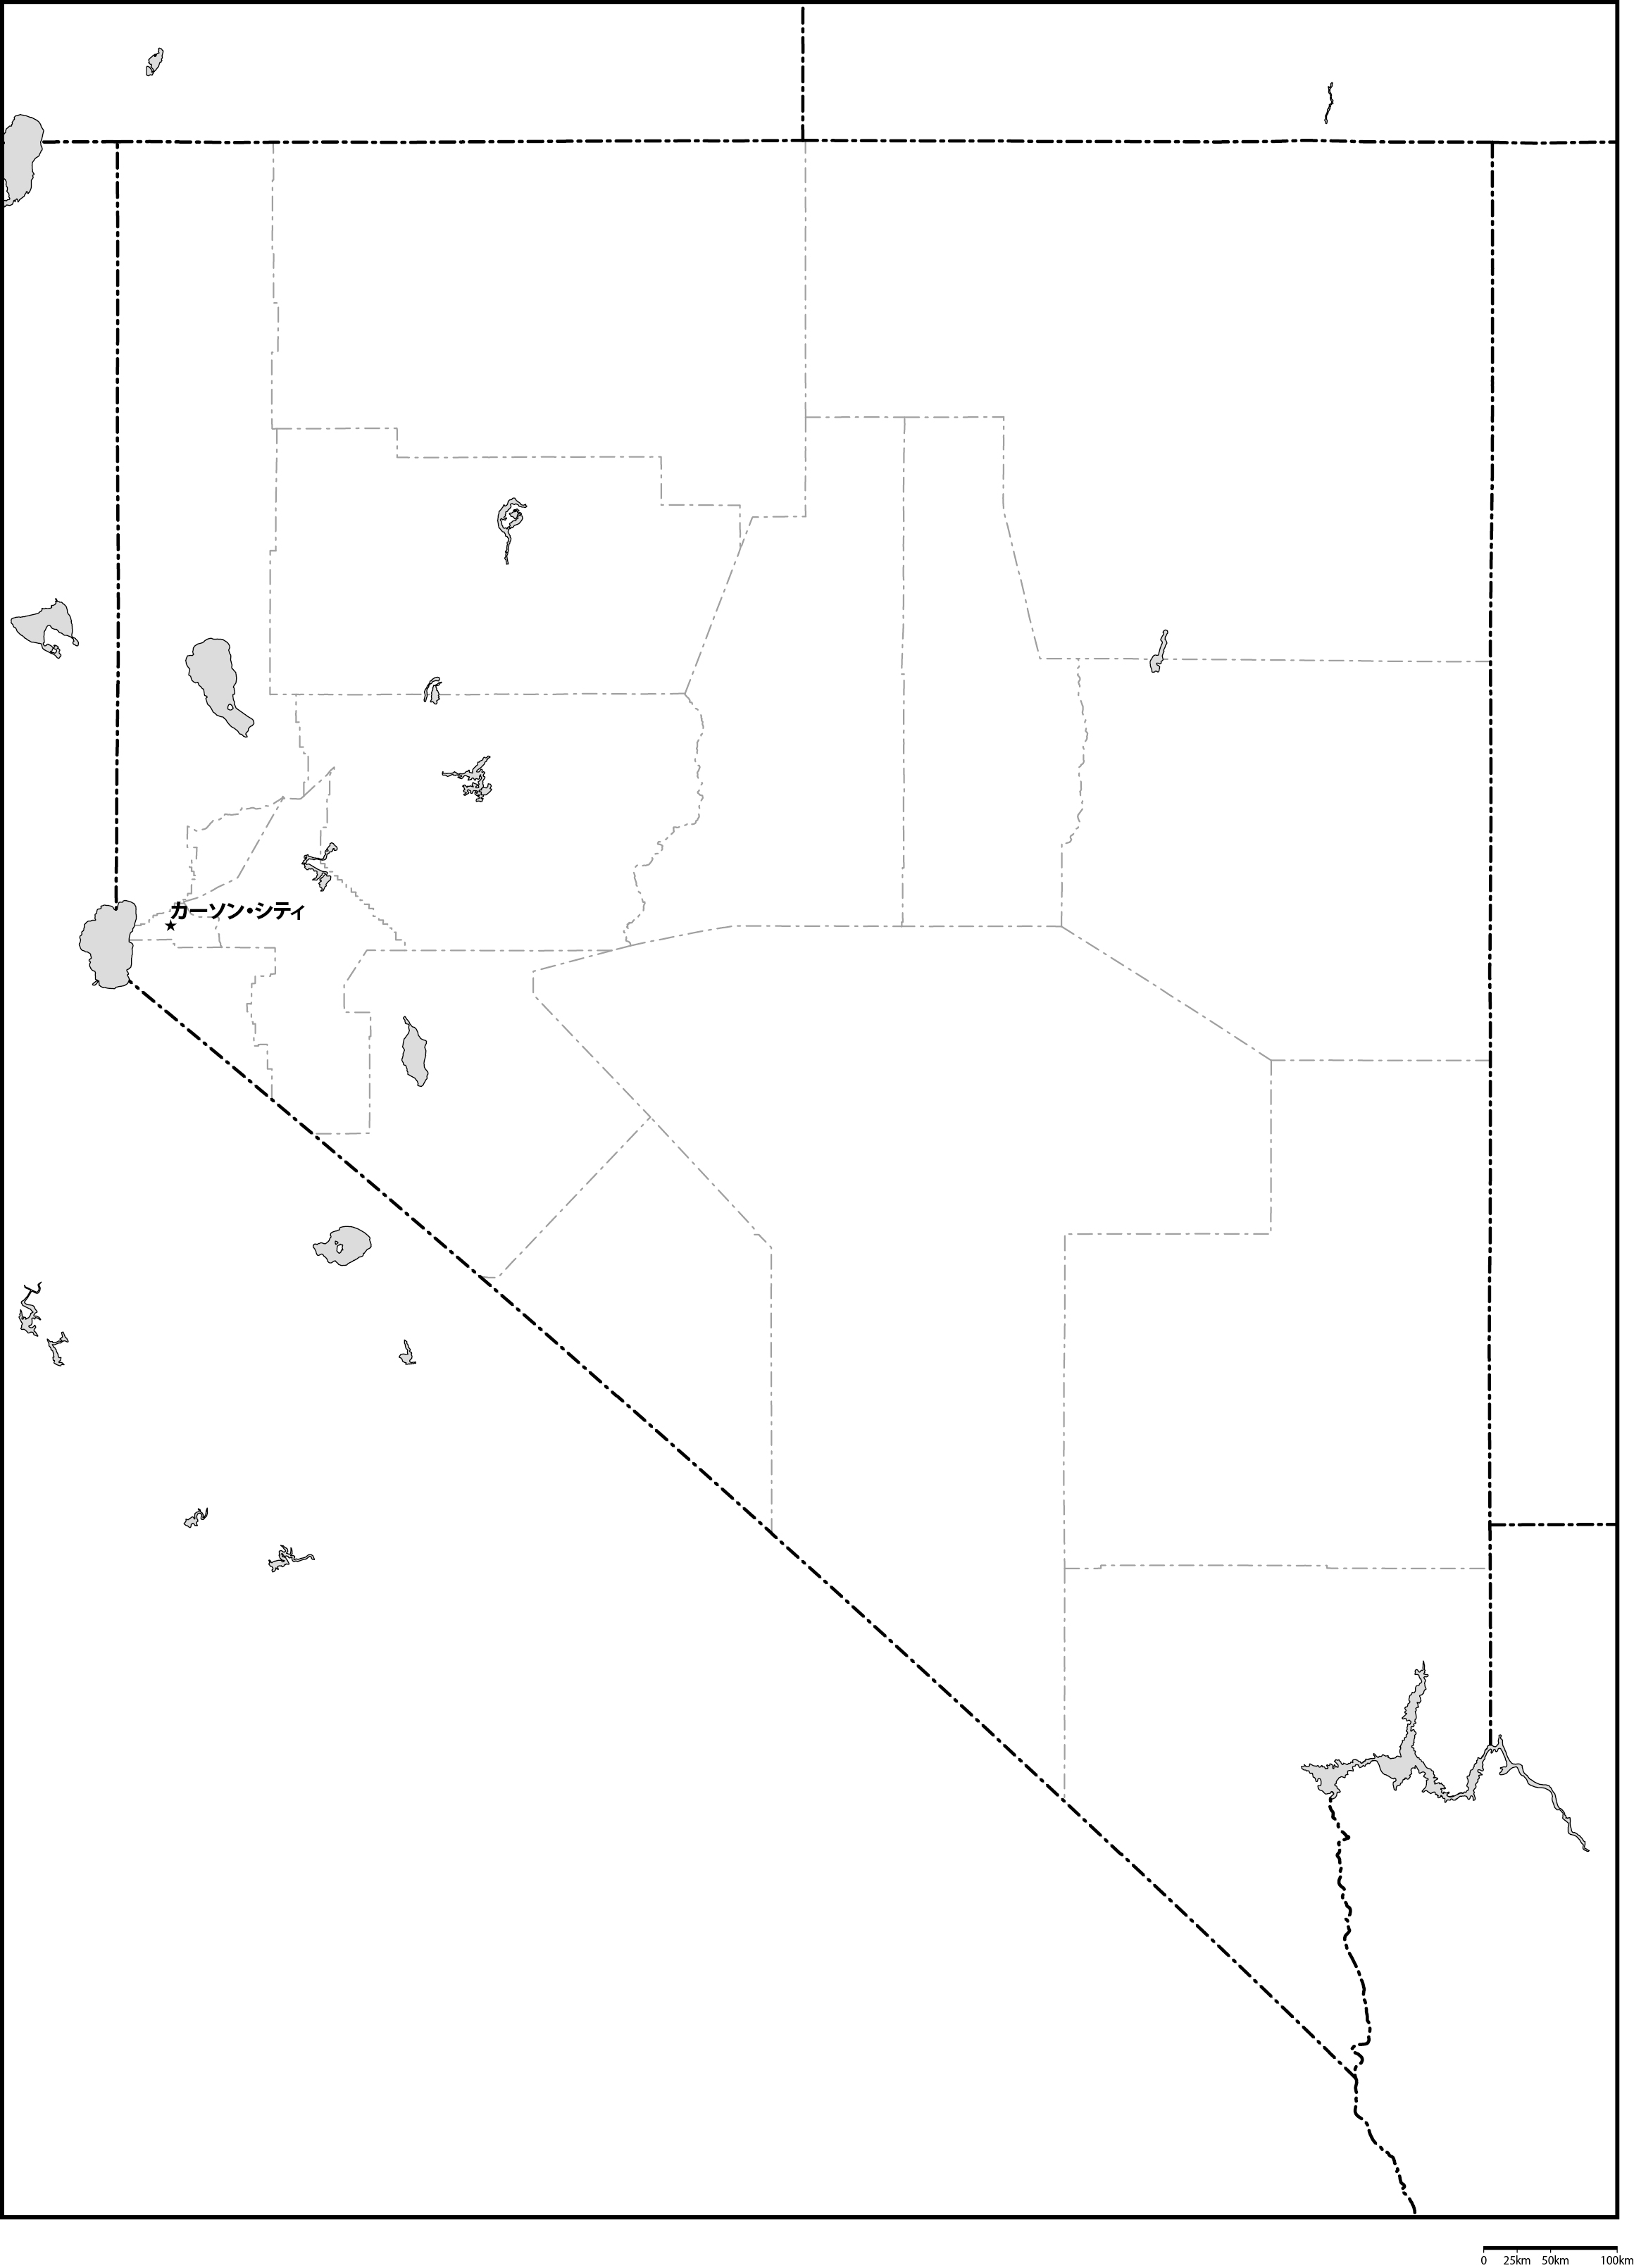 ネバダ州郡分け白地図州都あり(日本語)フリーデータの画像